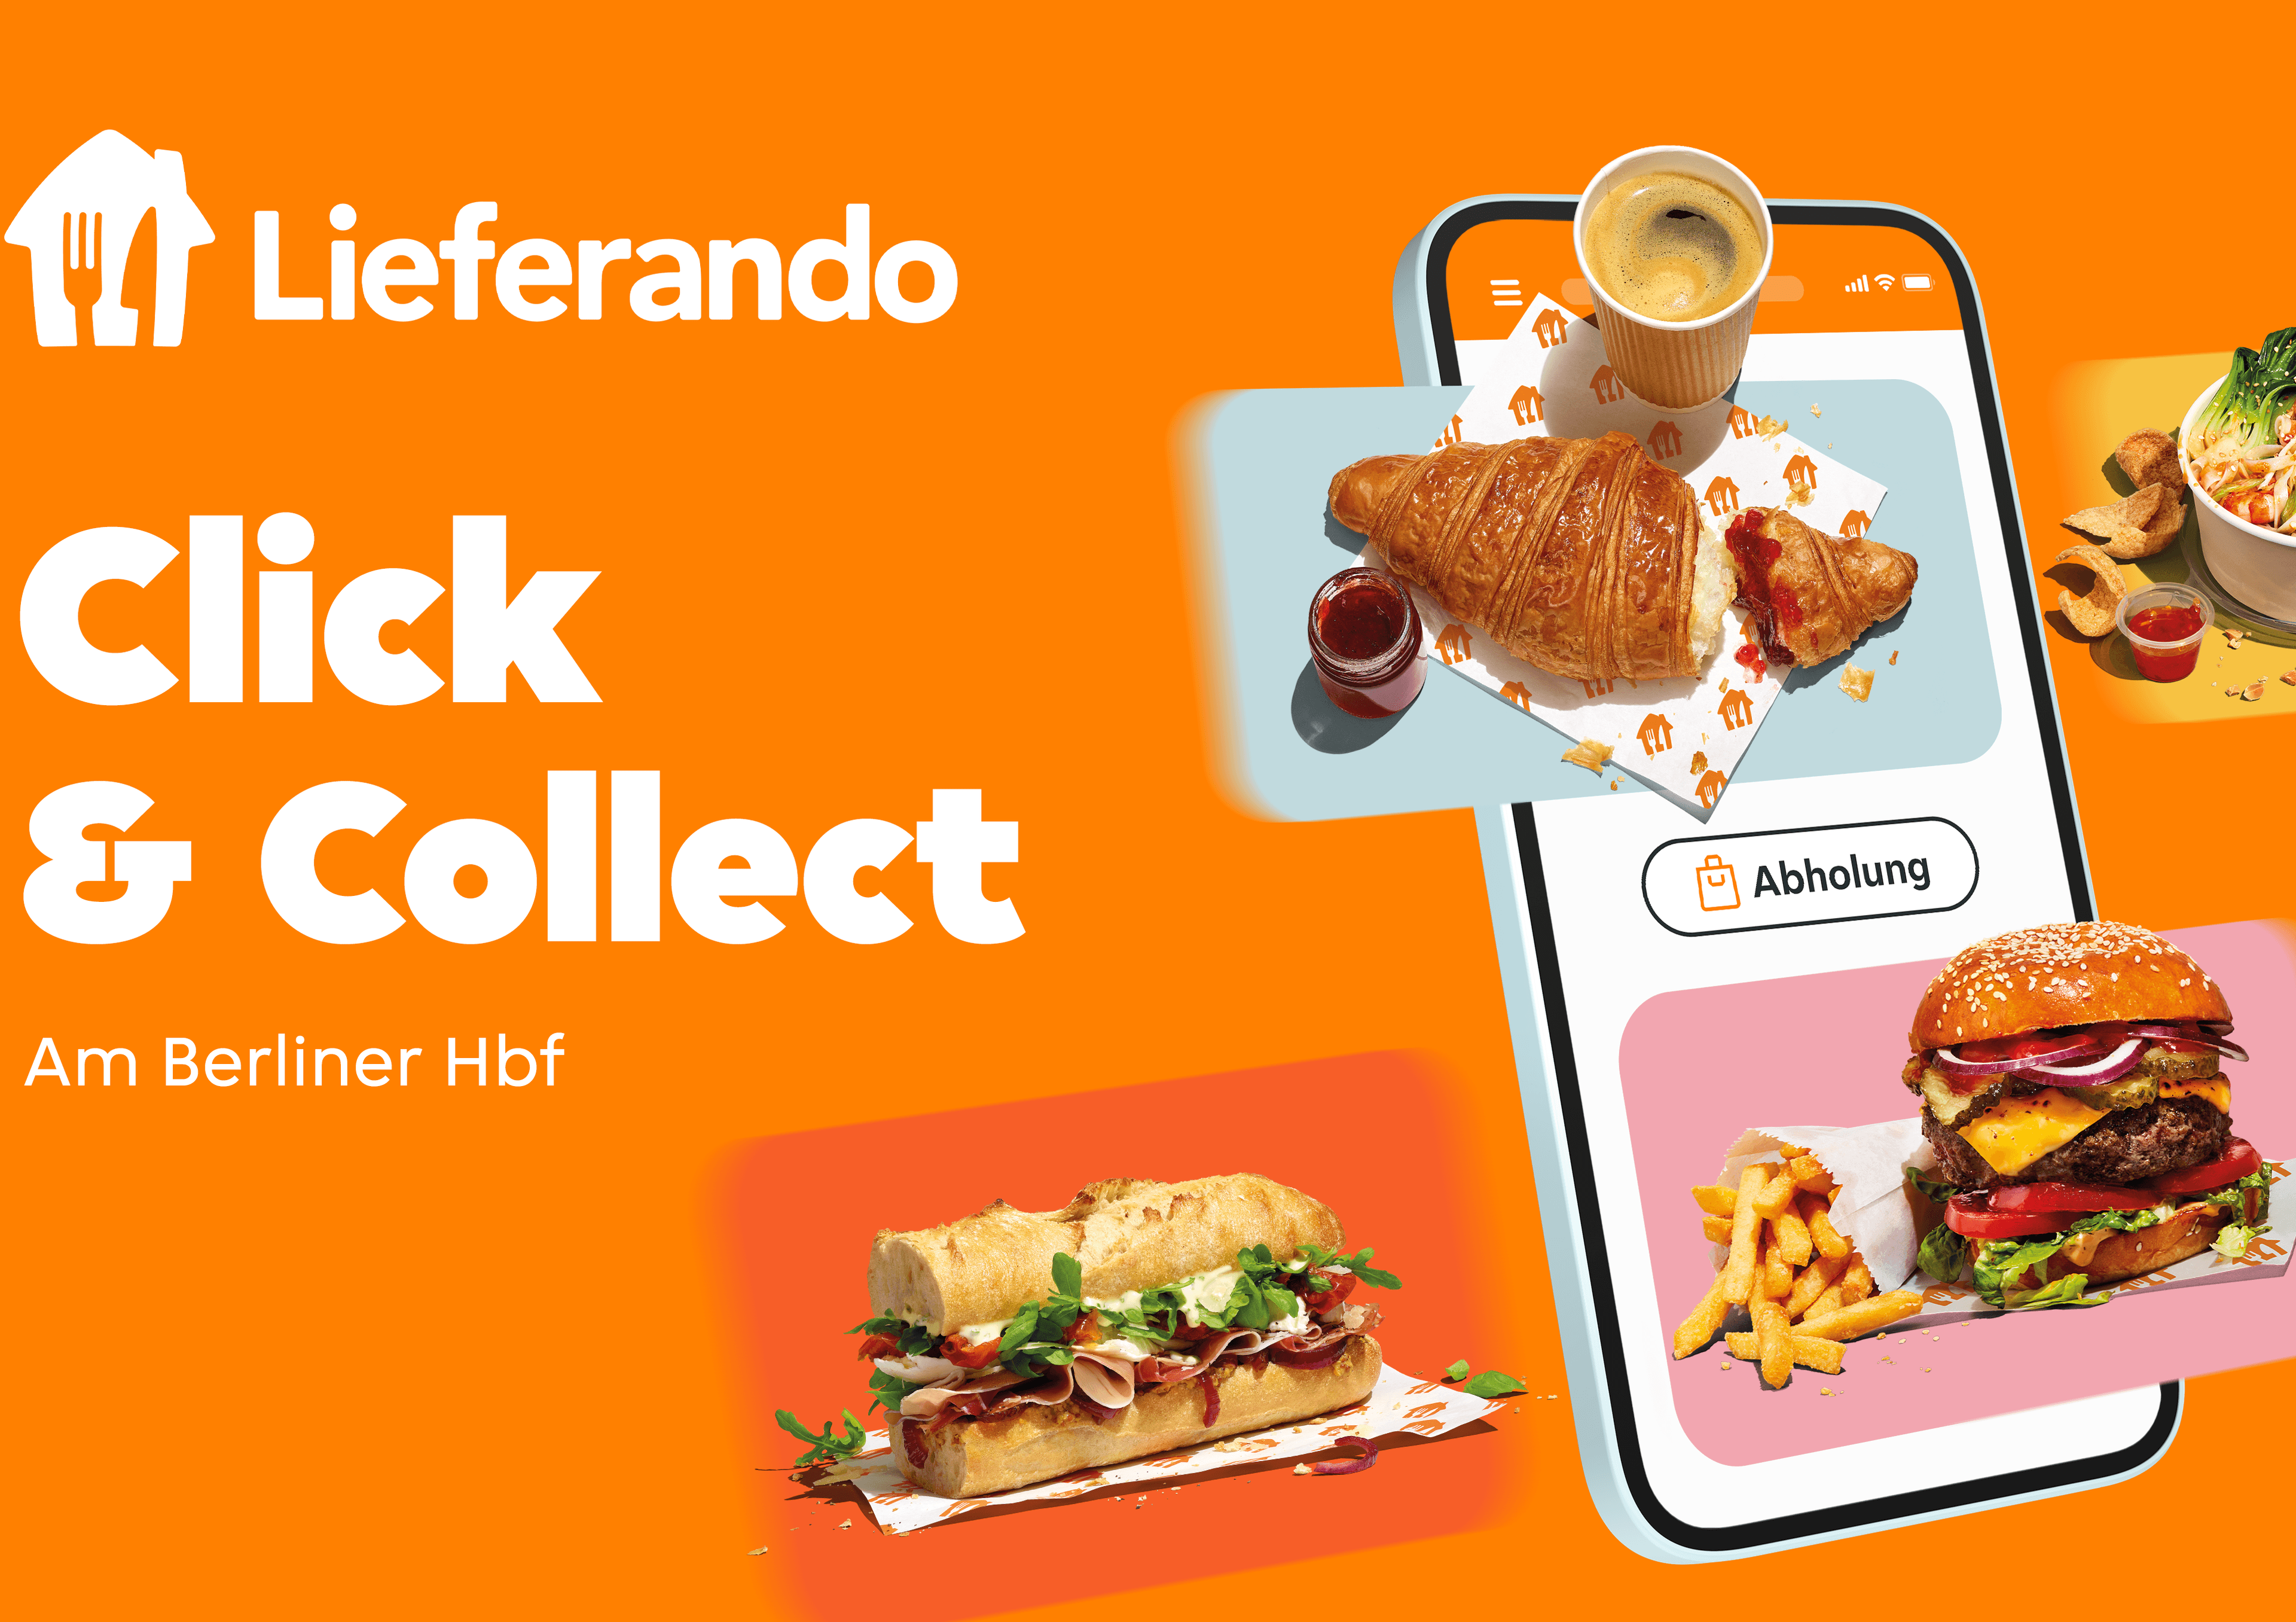 Lieferando Click & Collect am Berliner Hauptbahnhof, ein Smartphone auf dem verschiedene Lebensmittel zu sehen sind und das Wort Abholung.